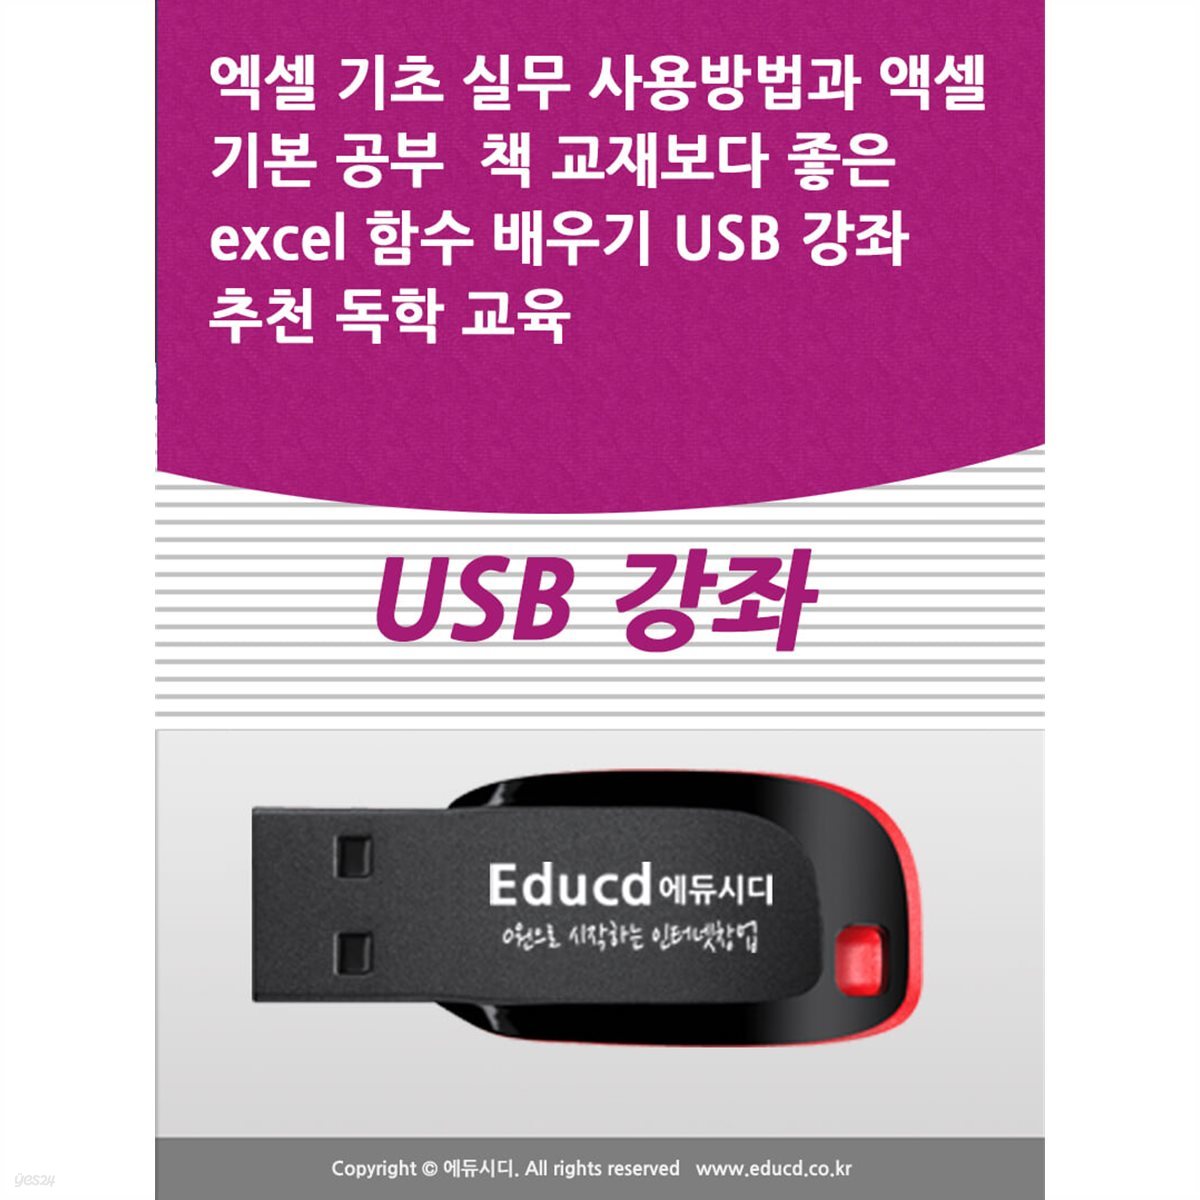 엑셀 기초 실무 사용방법과 액셀 기본 공부  책 교재보다 좋은 excel 함수 배우기 USB 강좌 추천 독학 교육